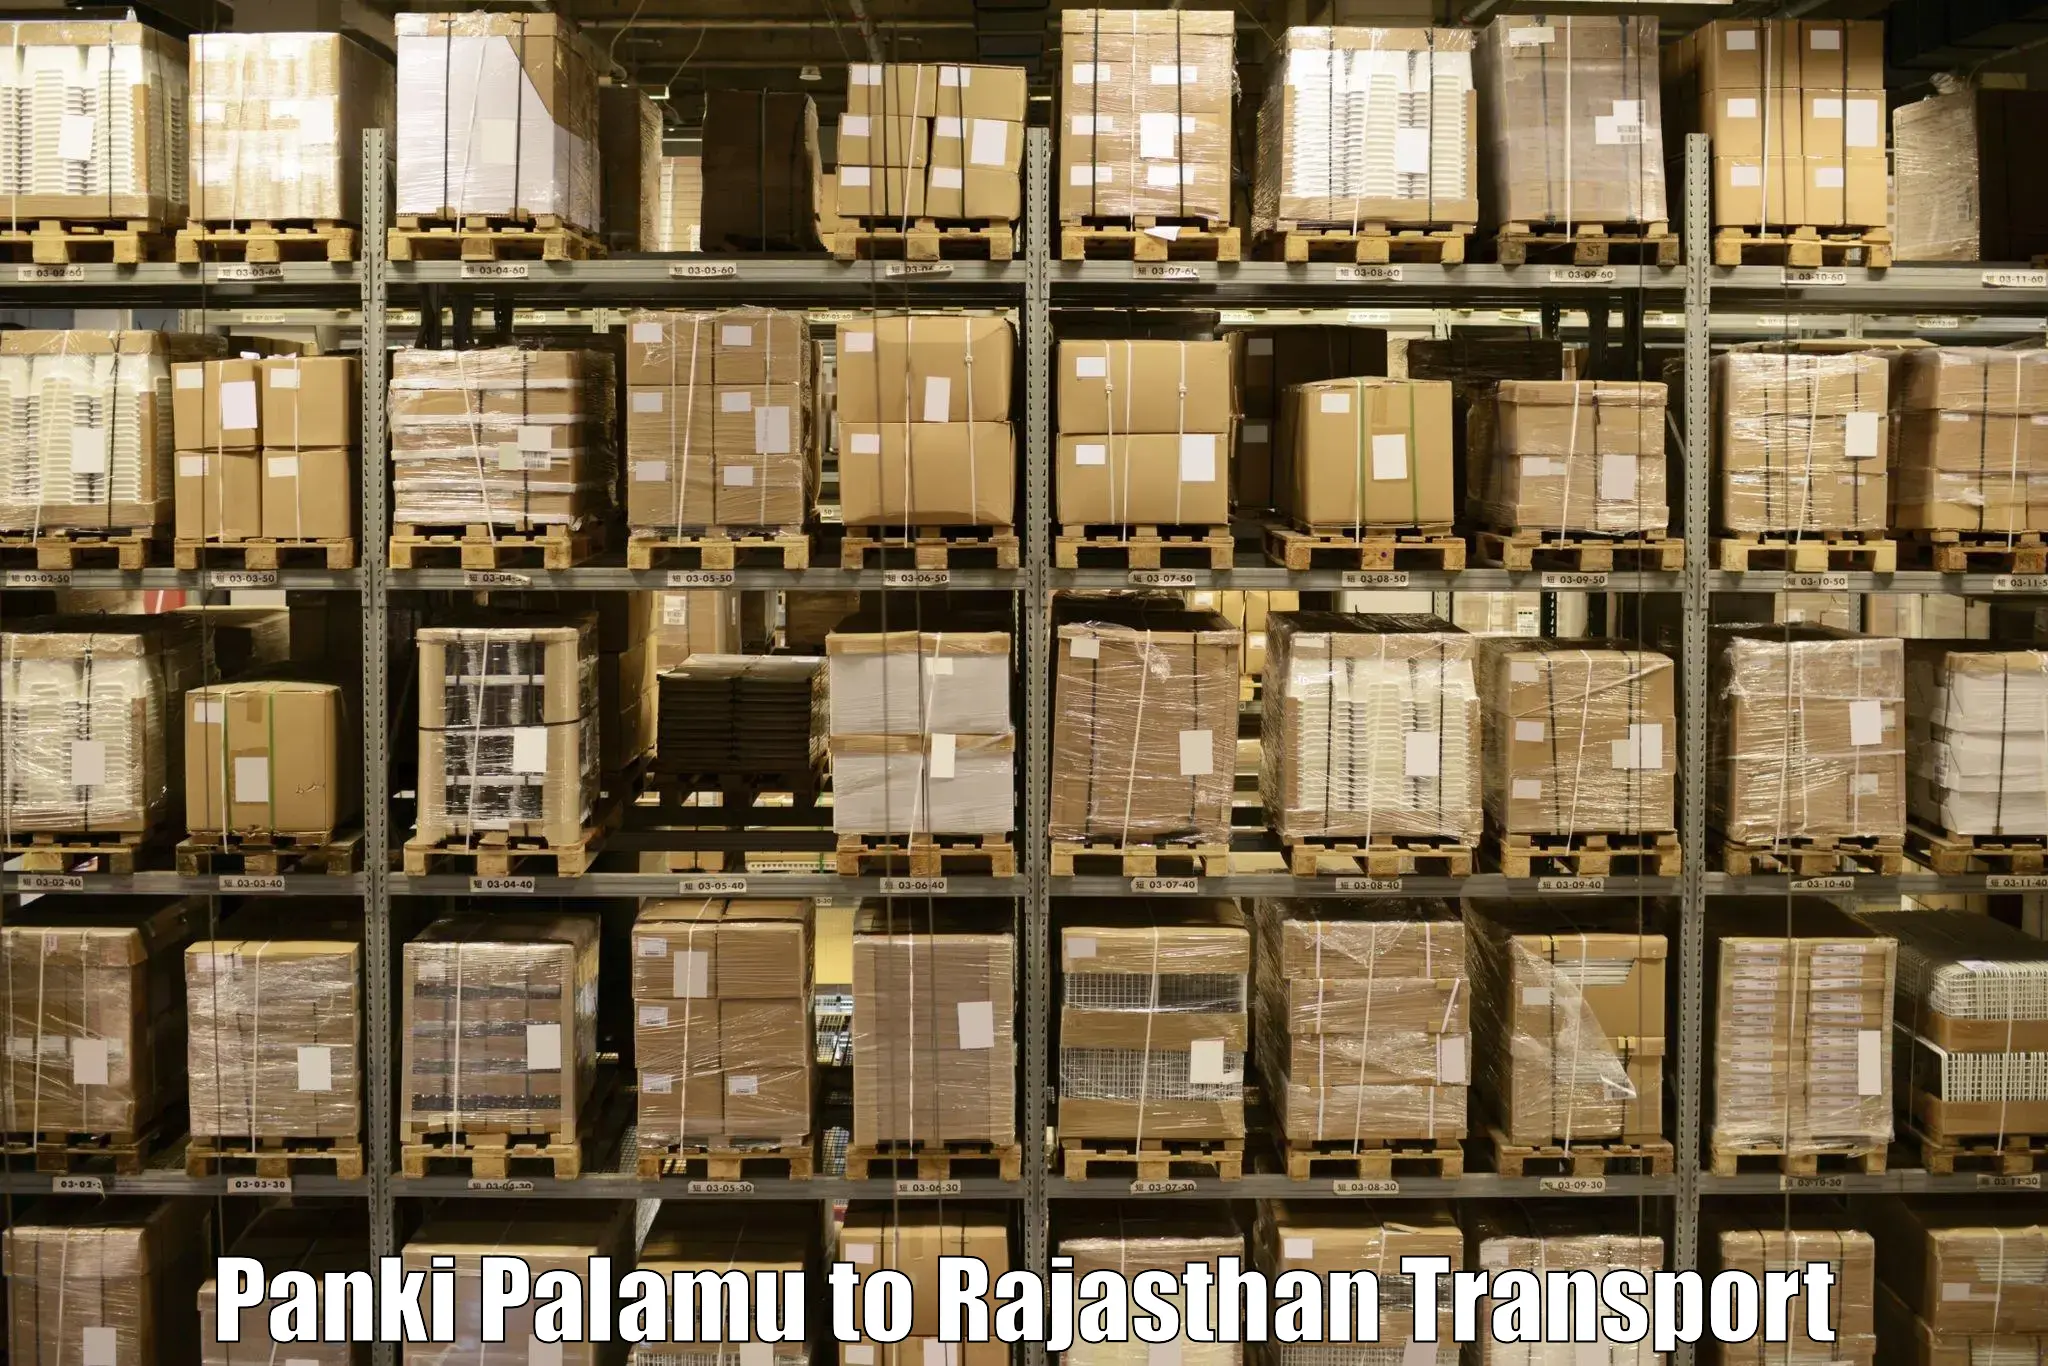 Nearest transport service Panki Palamu to Laxmangarh